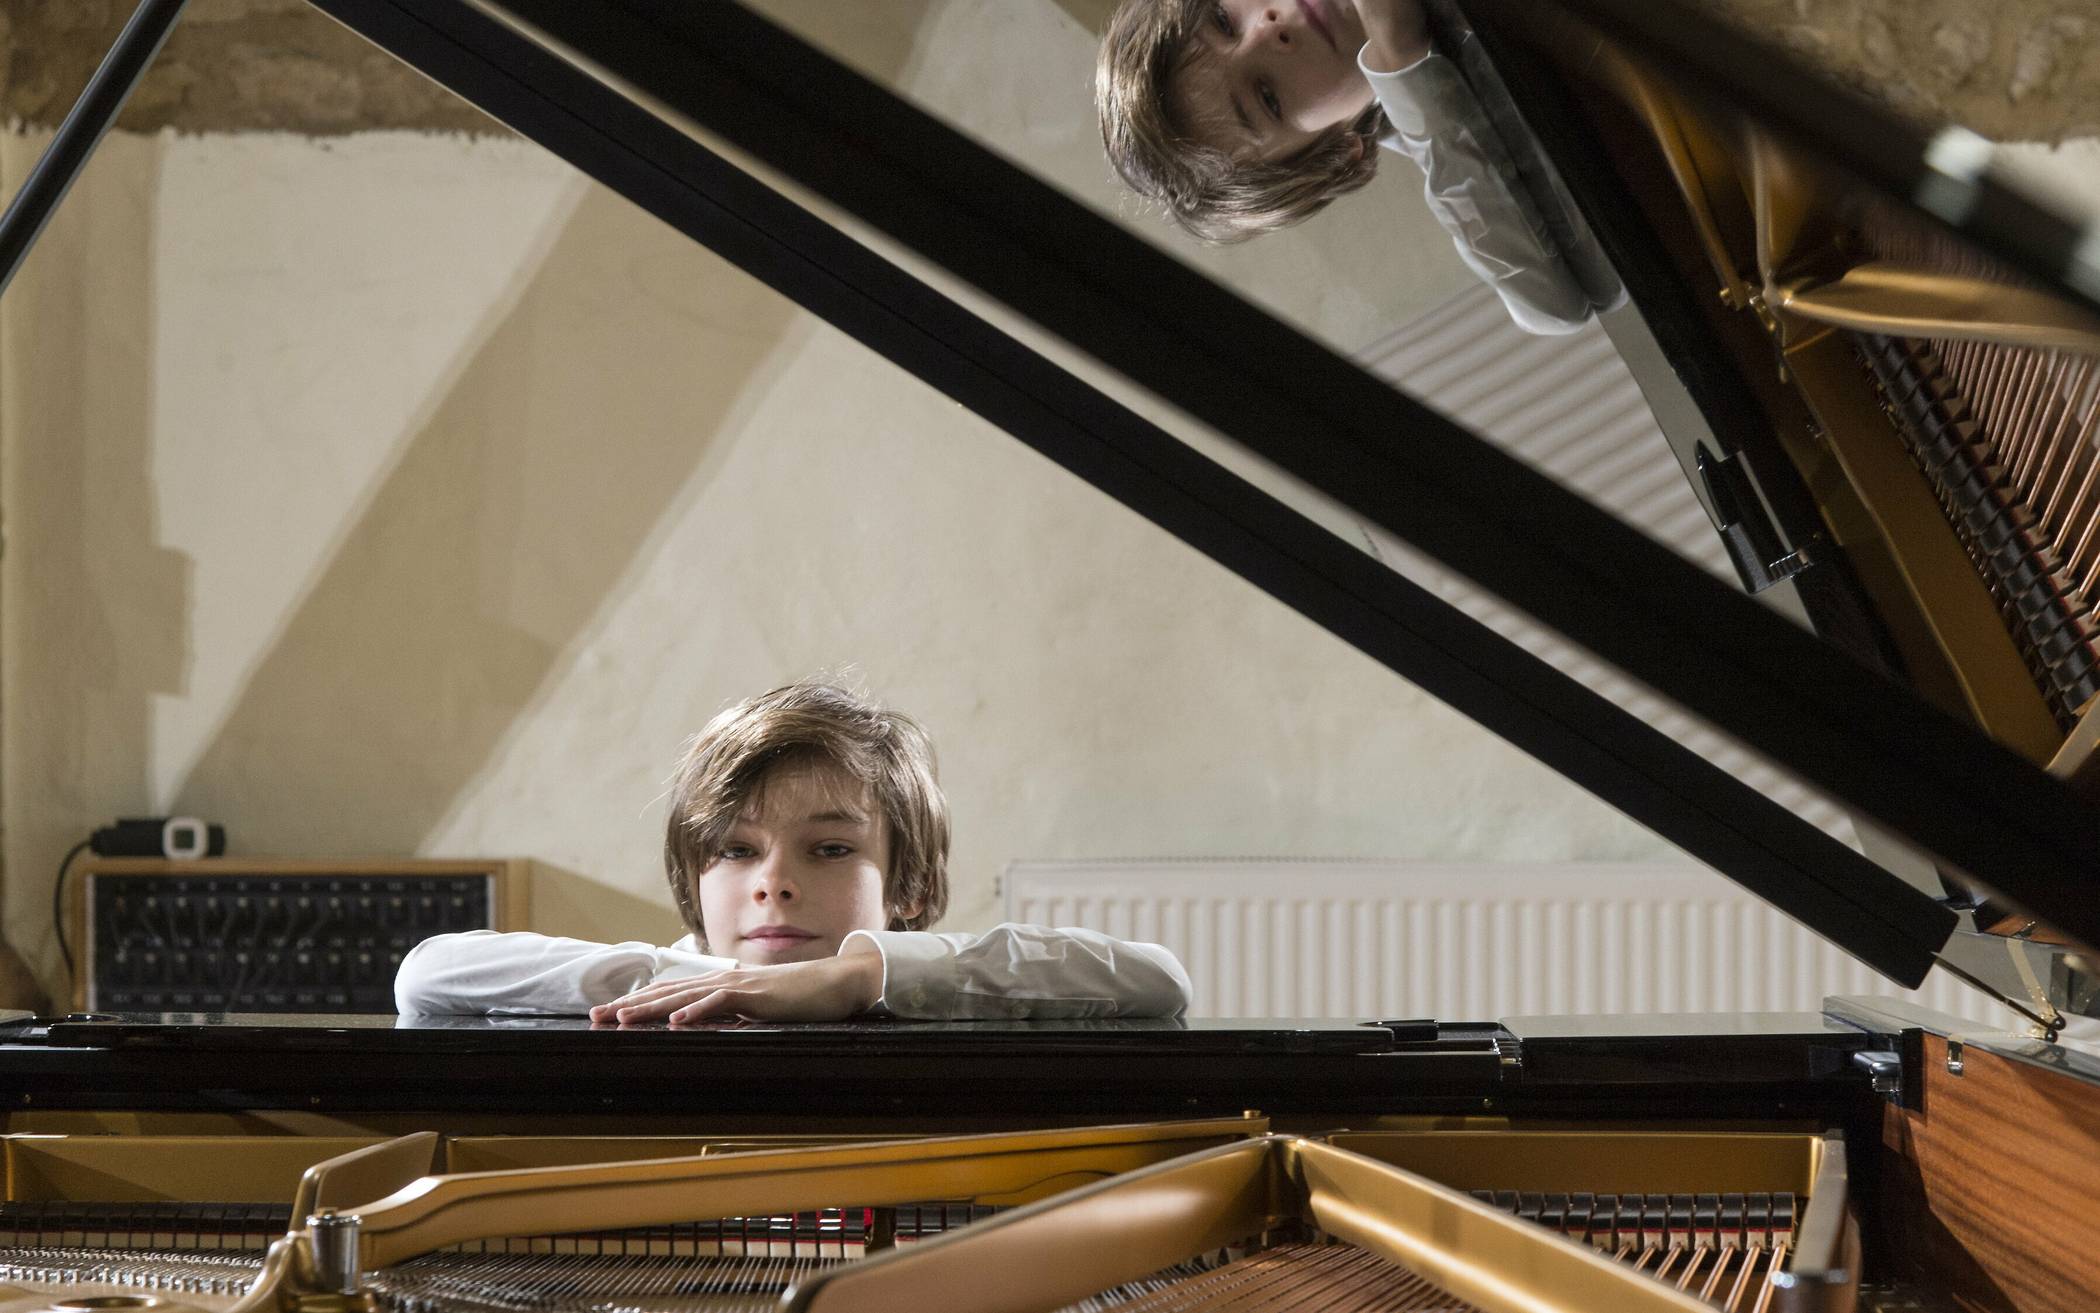  Ein junger Künstler mit großer Zukunft: Der Nachwuchspianist Colin Pütz studiert an der Wuppertaler Musikhochschule Klavier.  